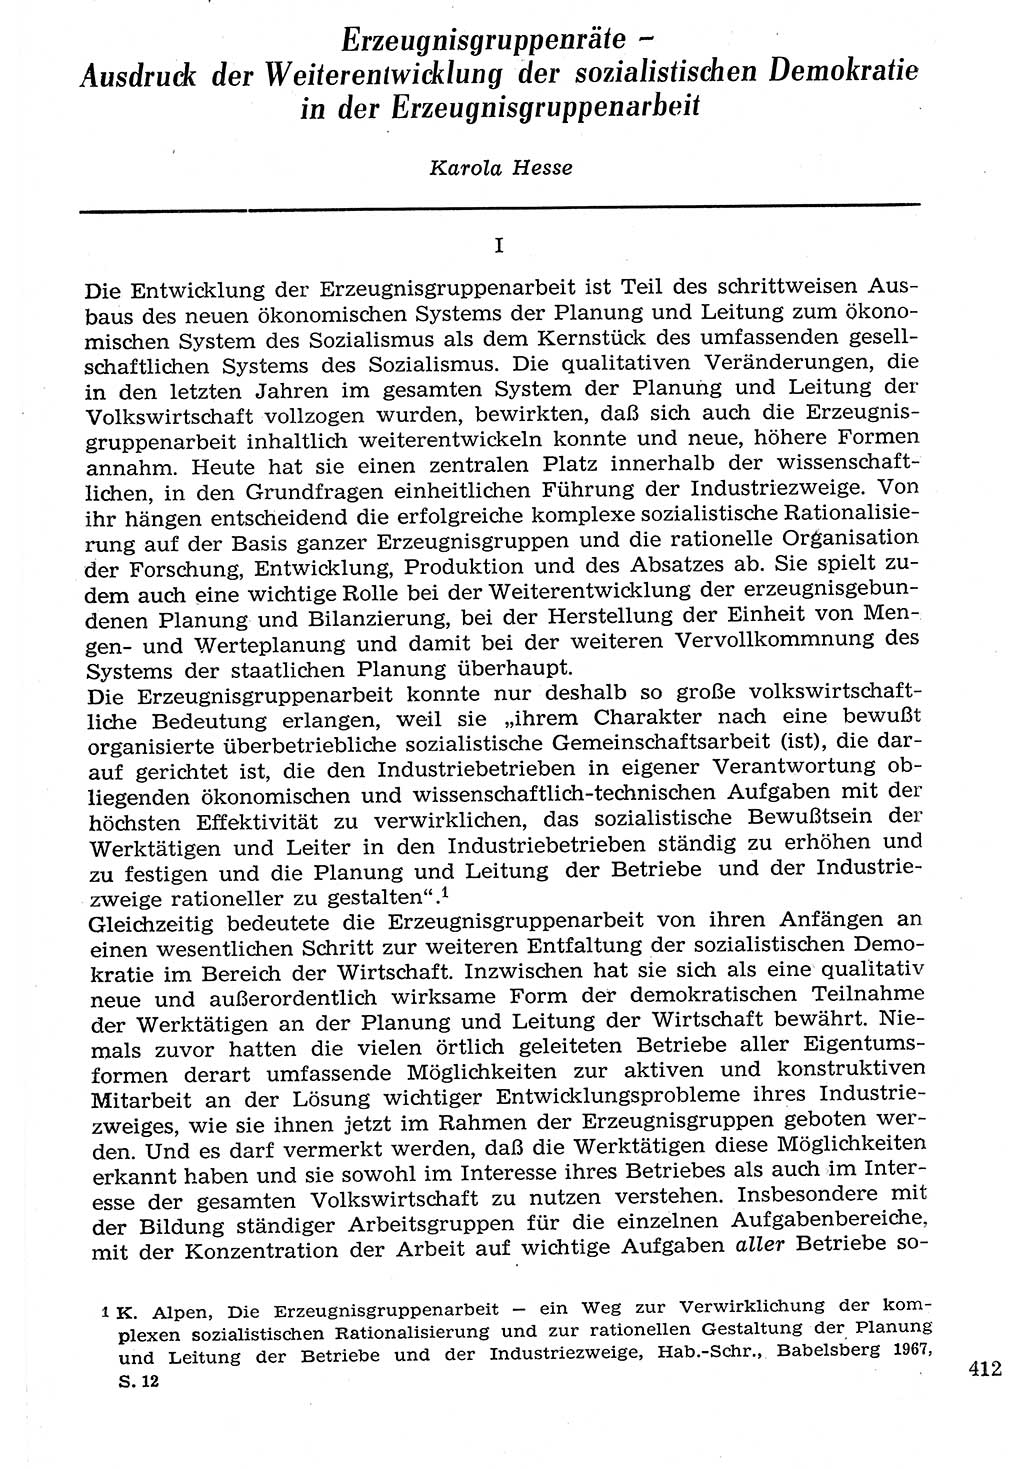 Staat und Recht (StuR), 17. Jahrgang [Deutsche Demokratische Republik (DDR)] 1968, Seite 412 (StuR DDR 1968, S. 412)